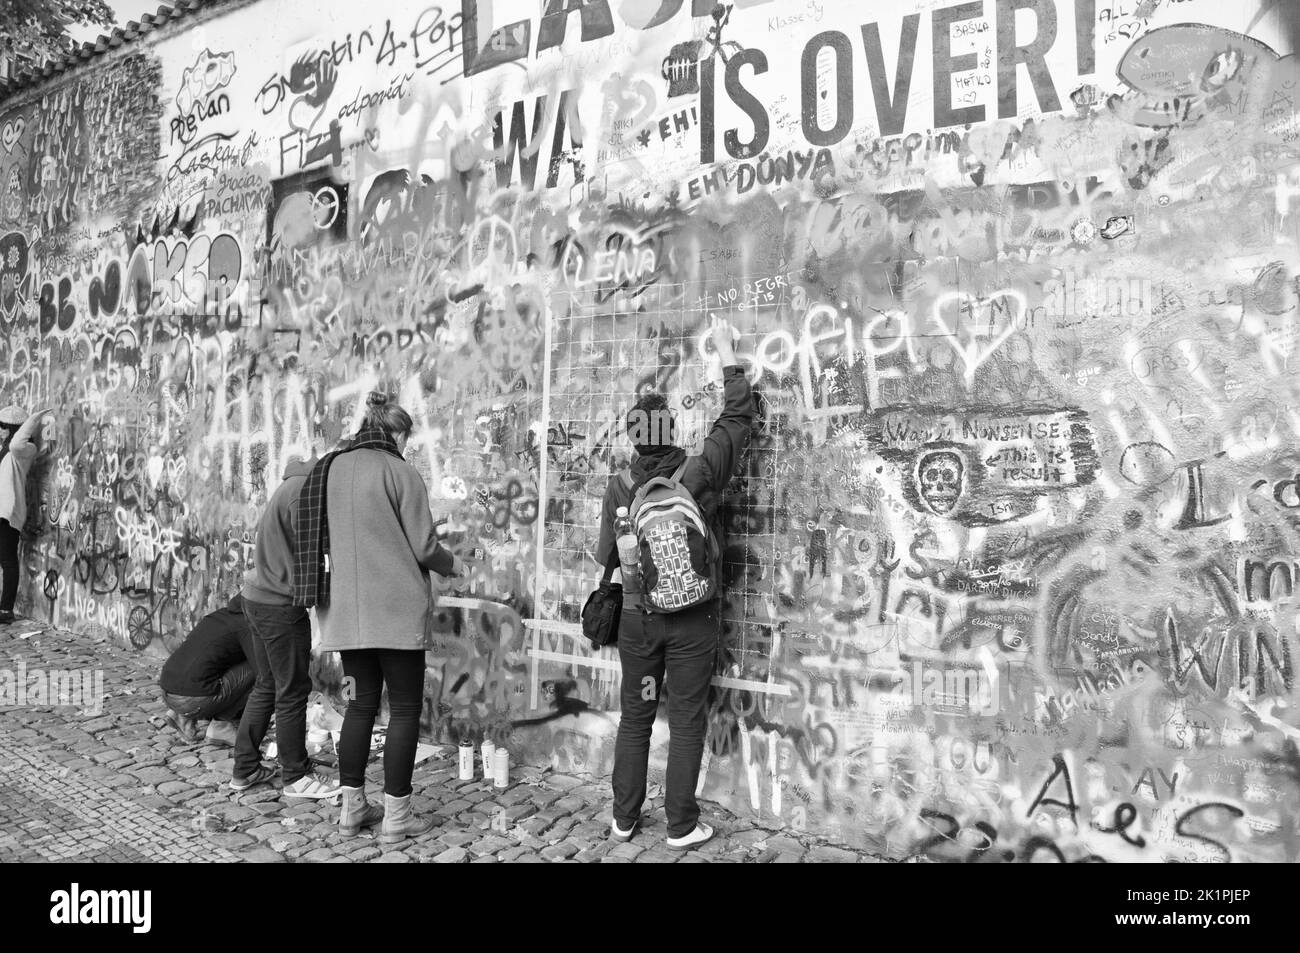 Un groupe de jeunes peignent un graffiti sur le mur John Lennon à Prague, en République tchèque Banque D'Images